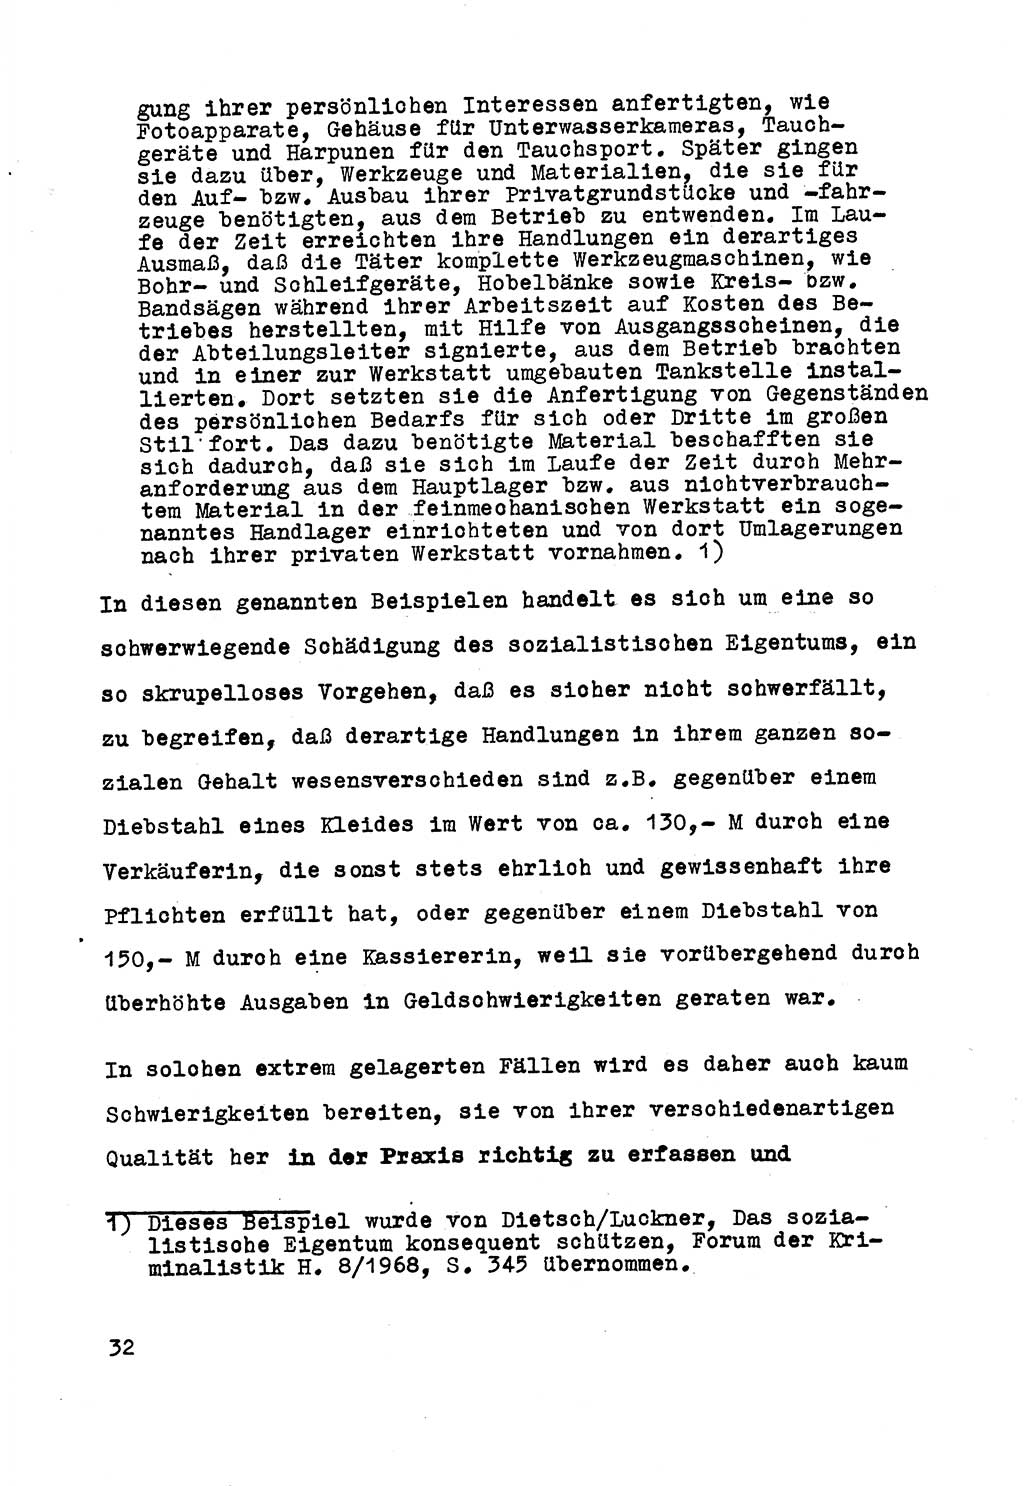 Strafrecht der DDR (Deutsche Demokratische Republik), Besonderer Teil, Lehrmaterial, Heft 5 1970, Seite 32 (Strafr. DDR BT Lehrmat. H. 5 1970, S. 32)